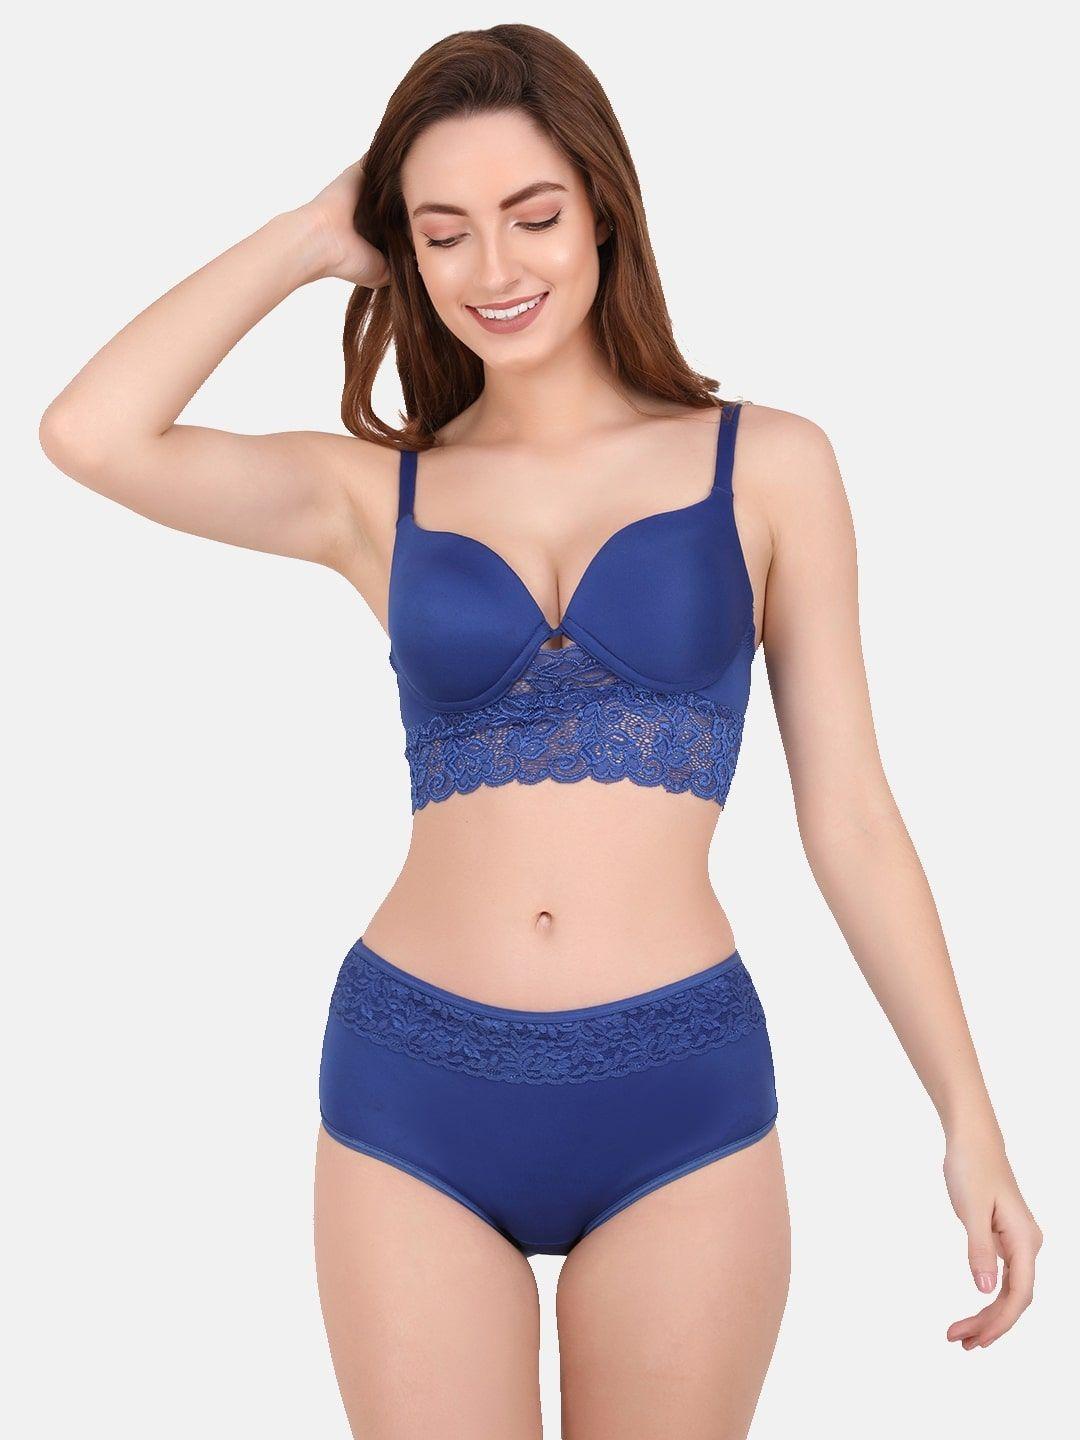 curwish-women-blue-solid-lace-lingerie-set